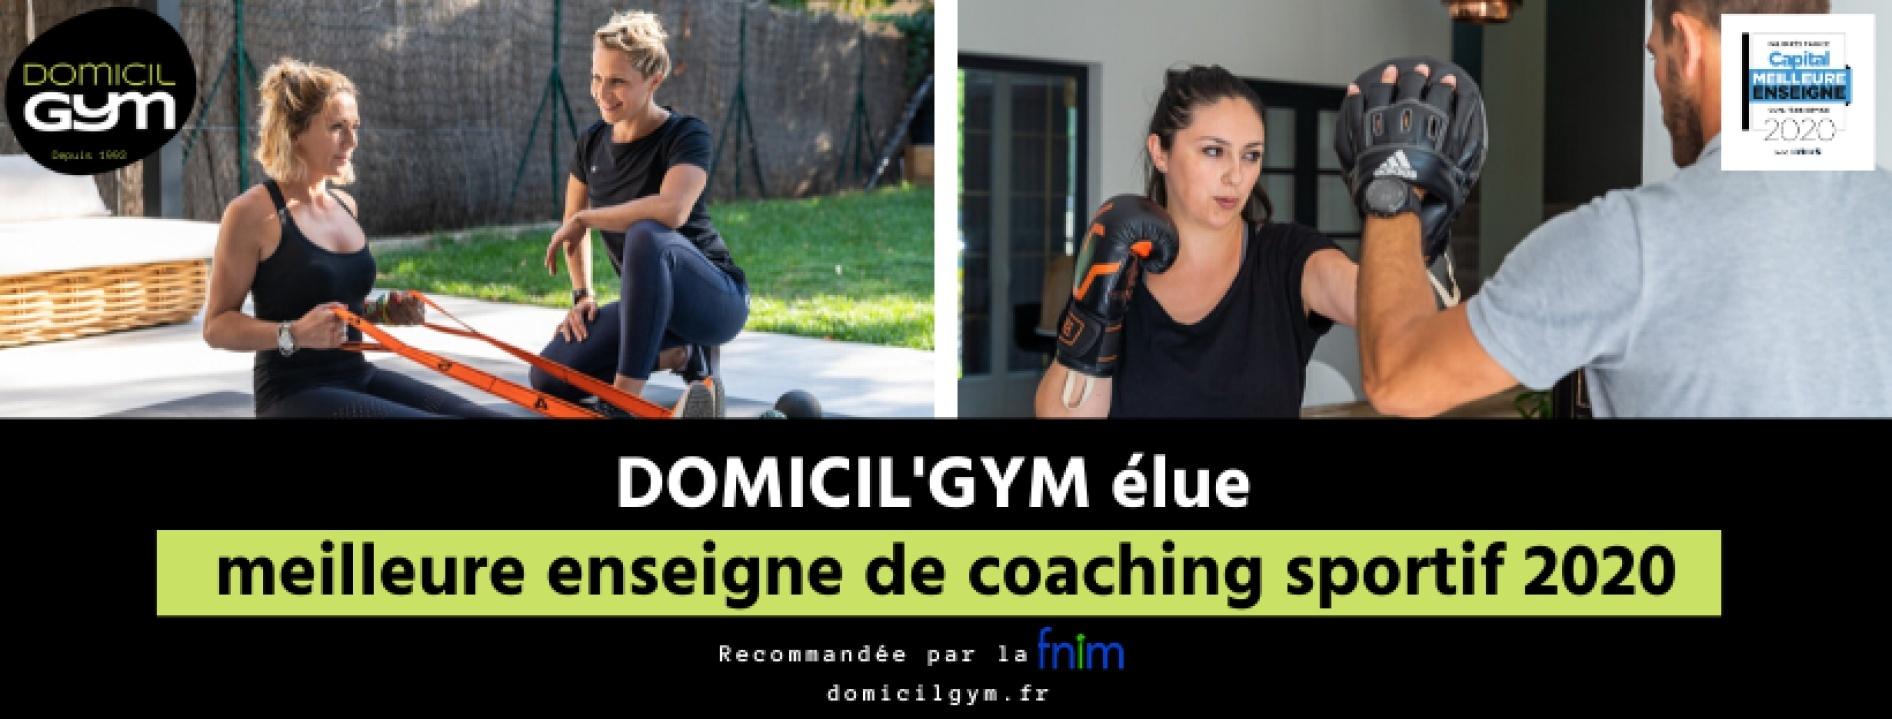 Domicil'gym Rennes